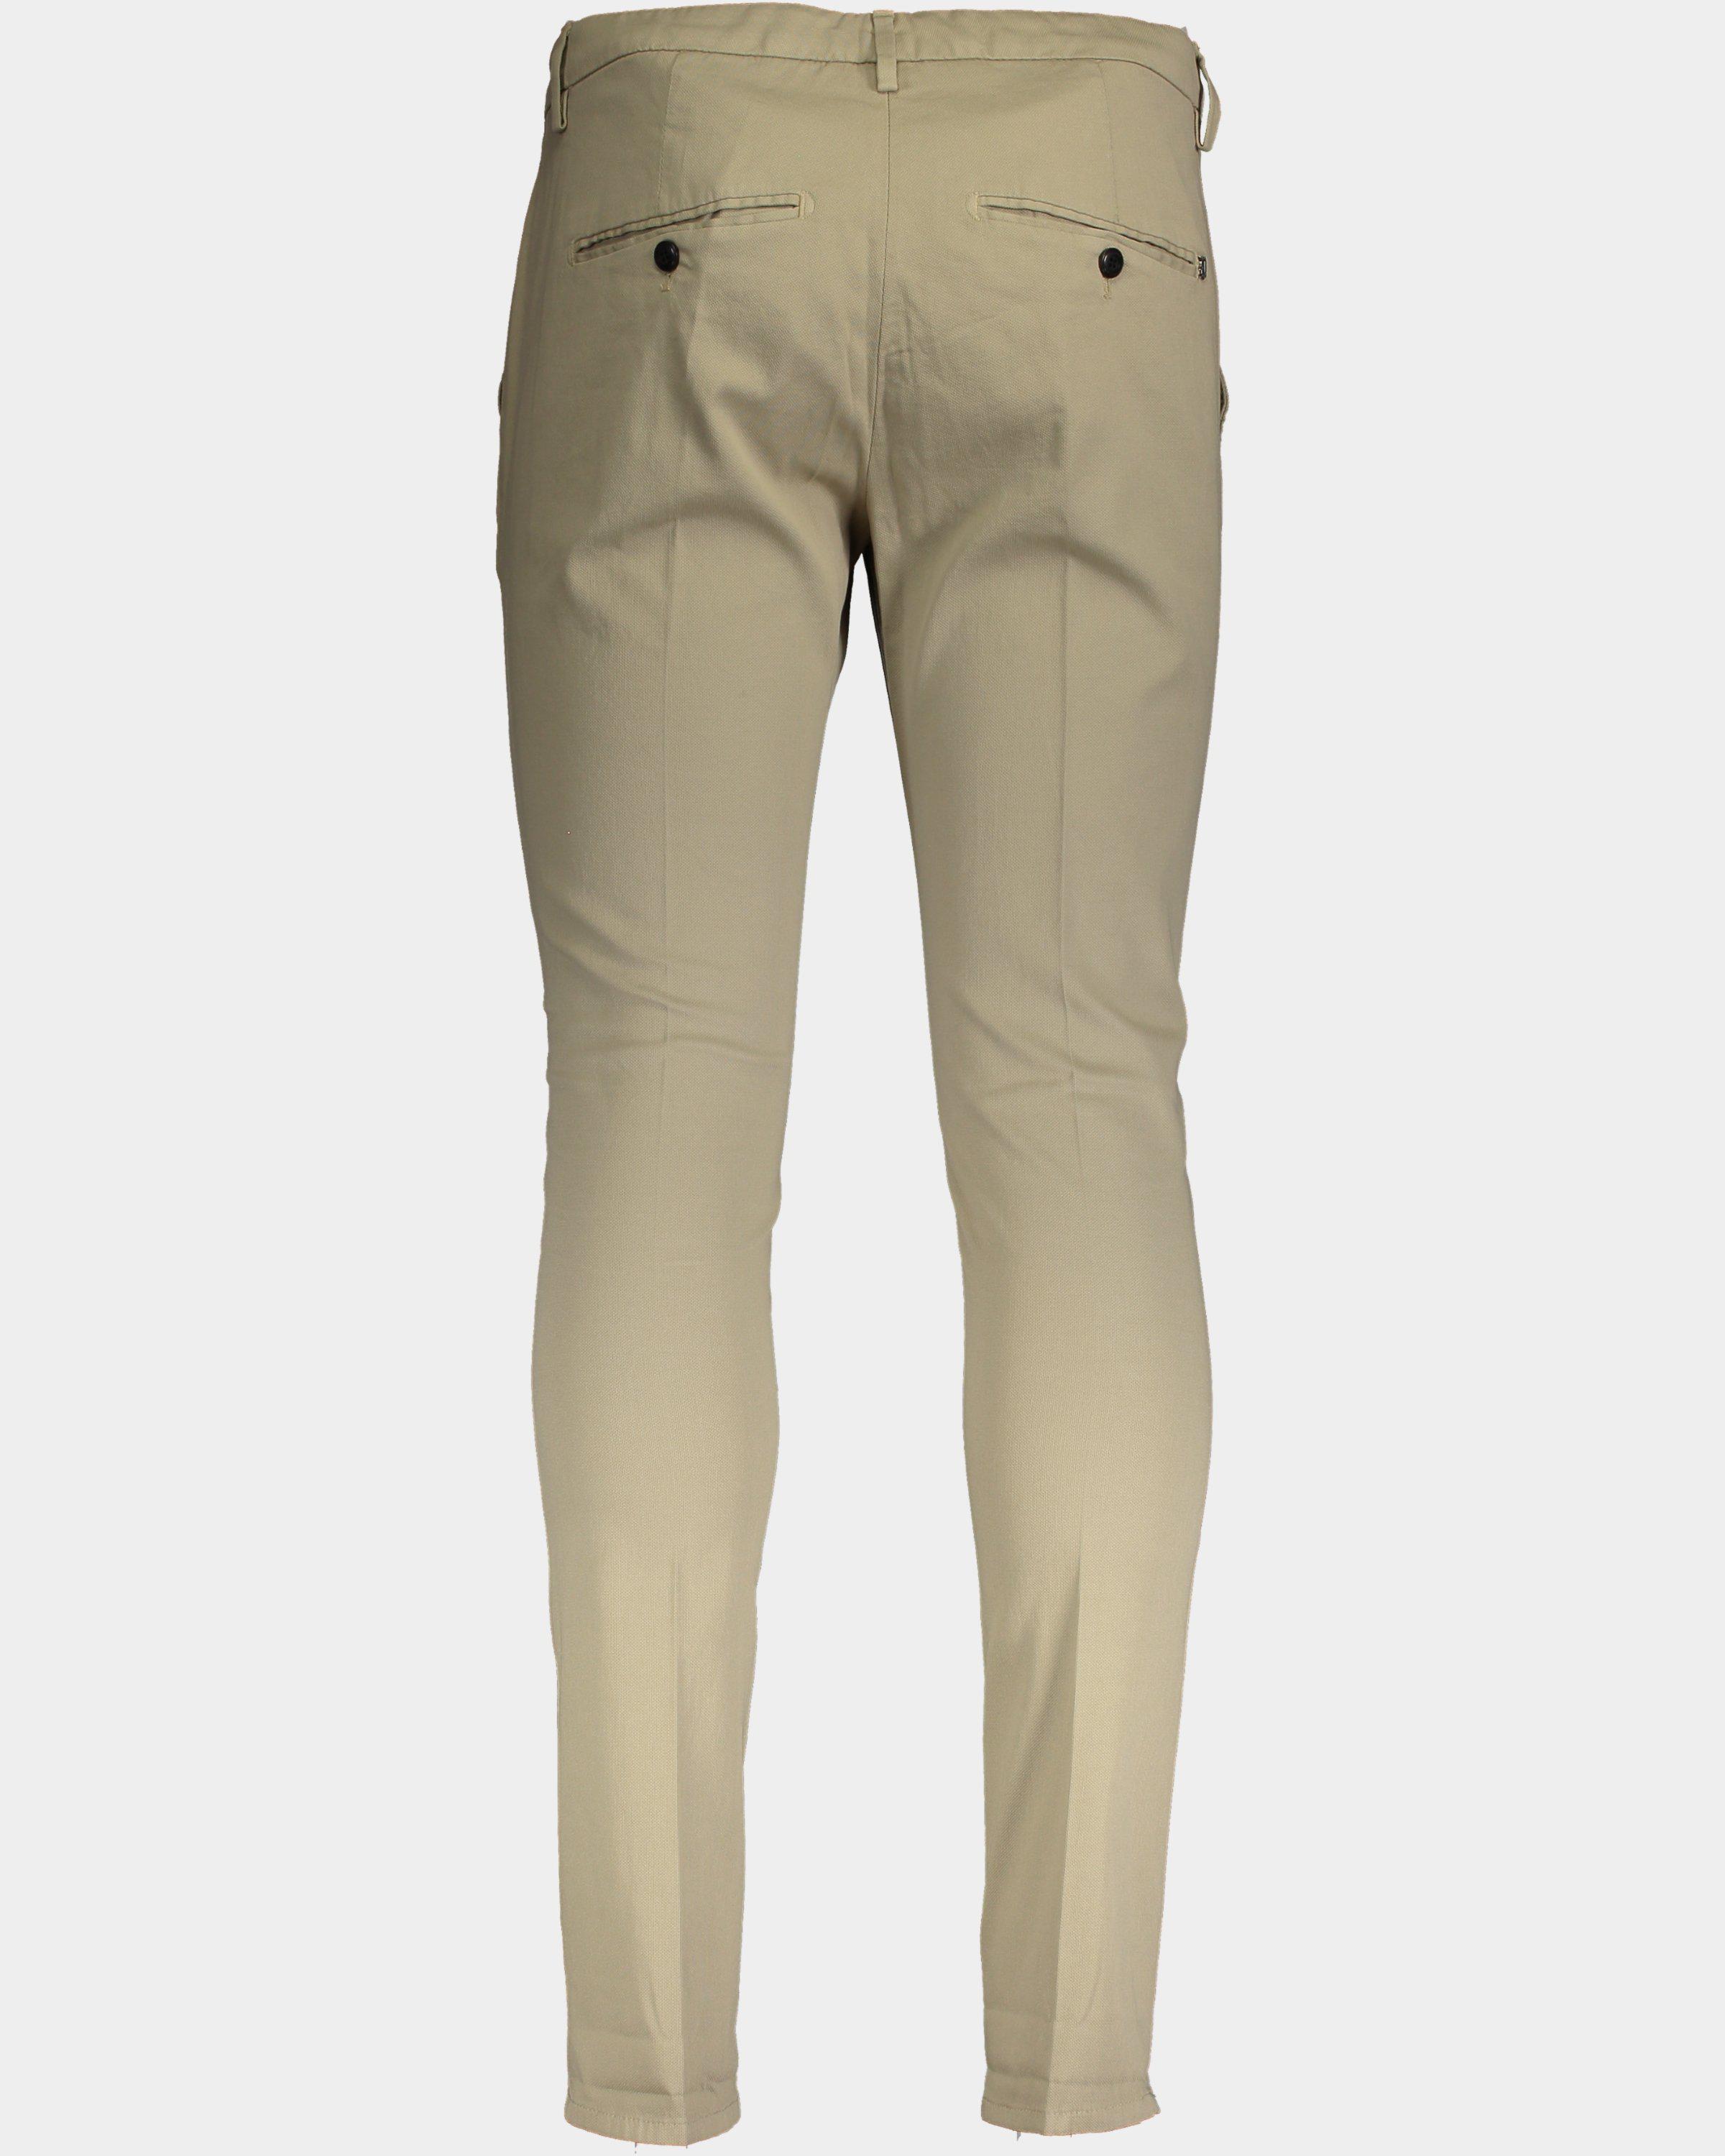 Pantalone Gaubert cotone armaturato beige